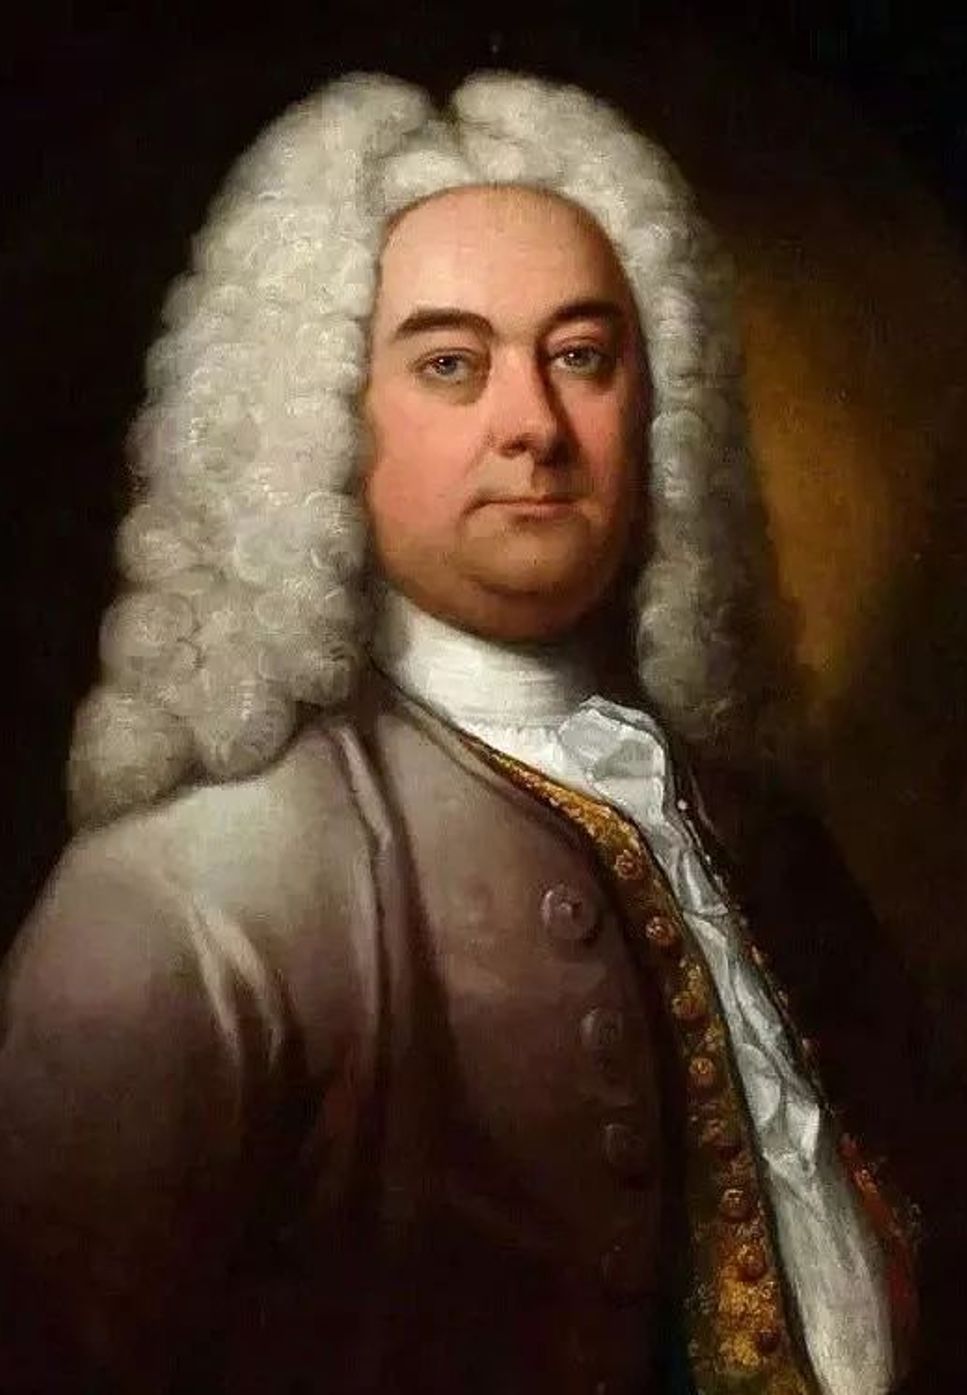 George Frideric Handel - Händel Messiah,Hallelujah Chorus Piano Solo (亨德尔 弥赛亚，原版，哈利路亚，Händel Messiah,Hallelujah Chorus Piano Solo) by poon